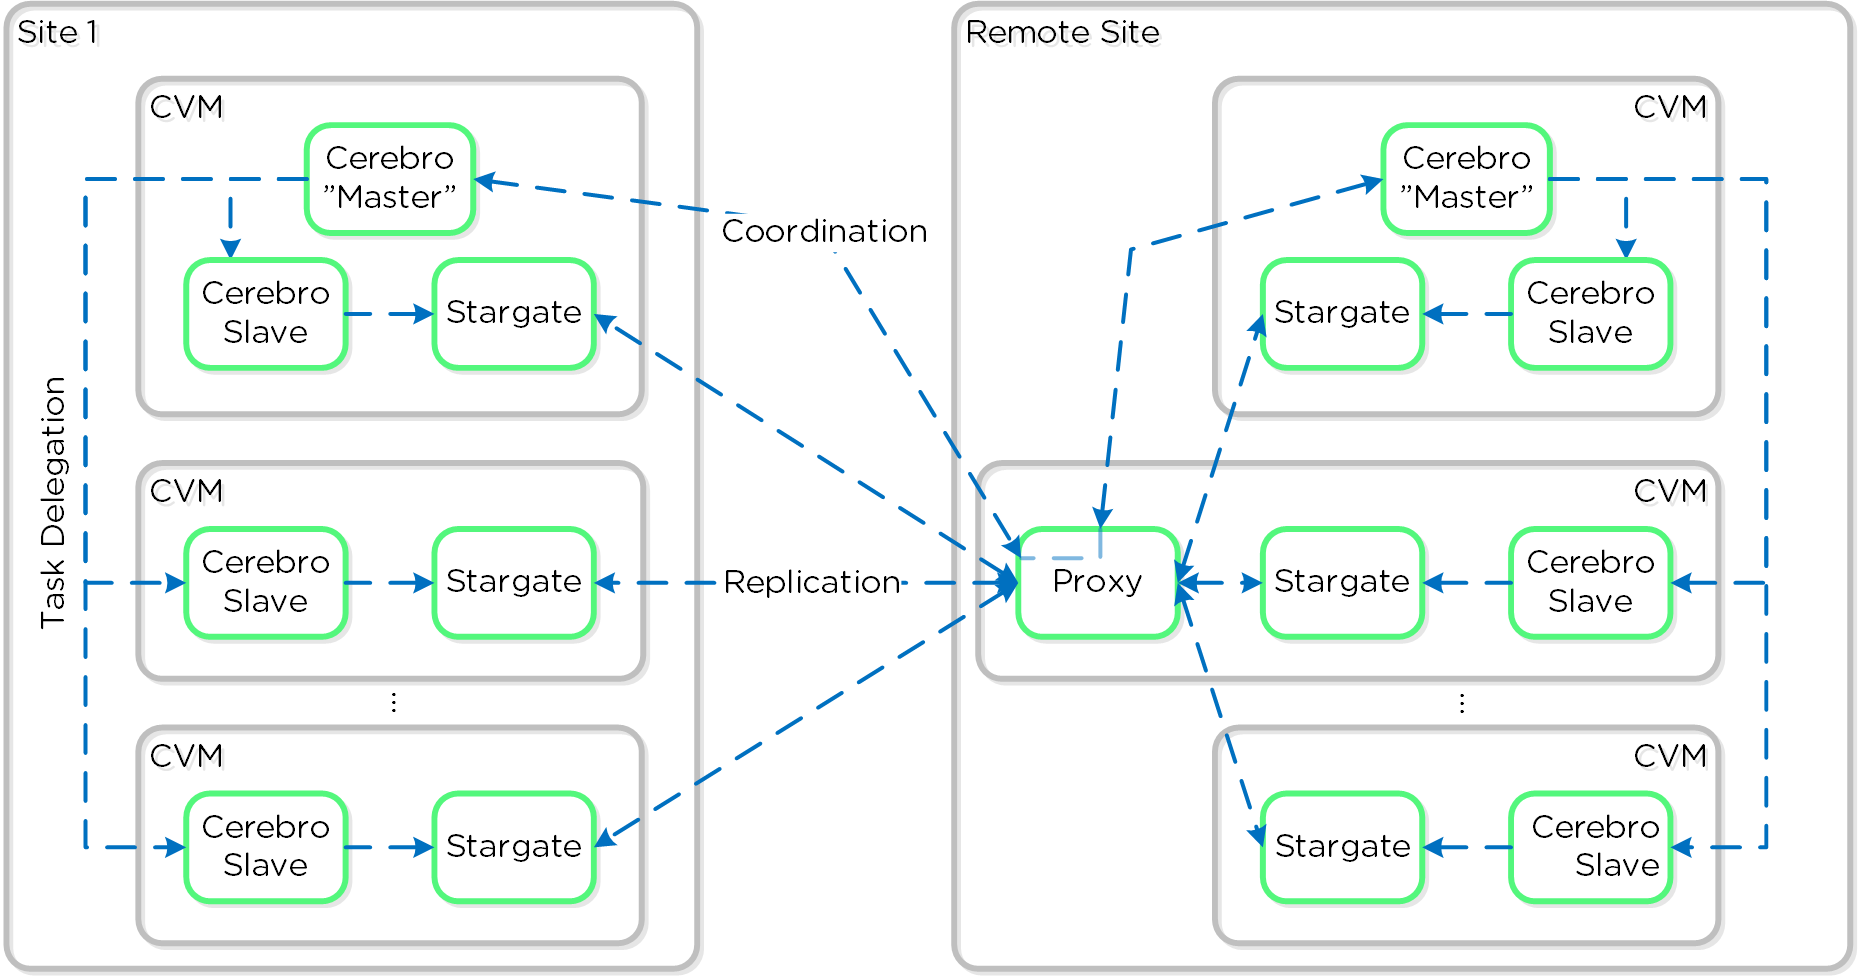 Replication Architecture - Proxy